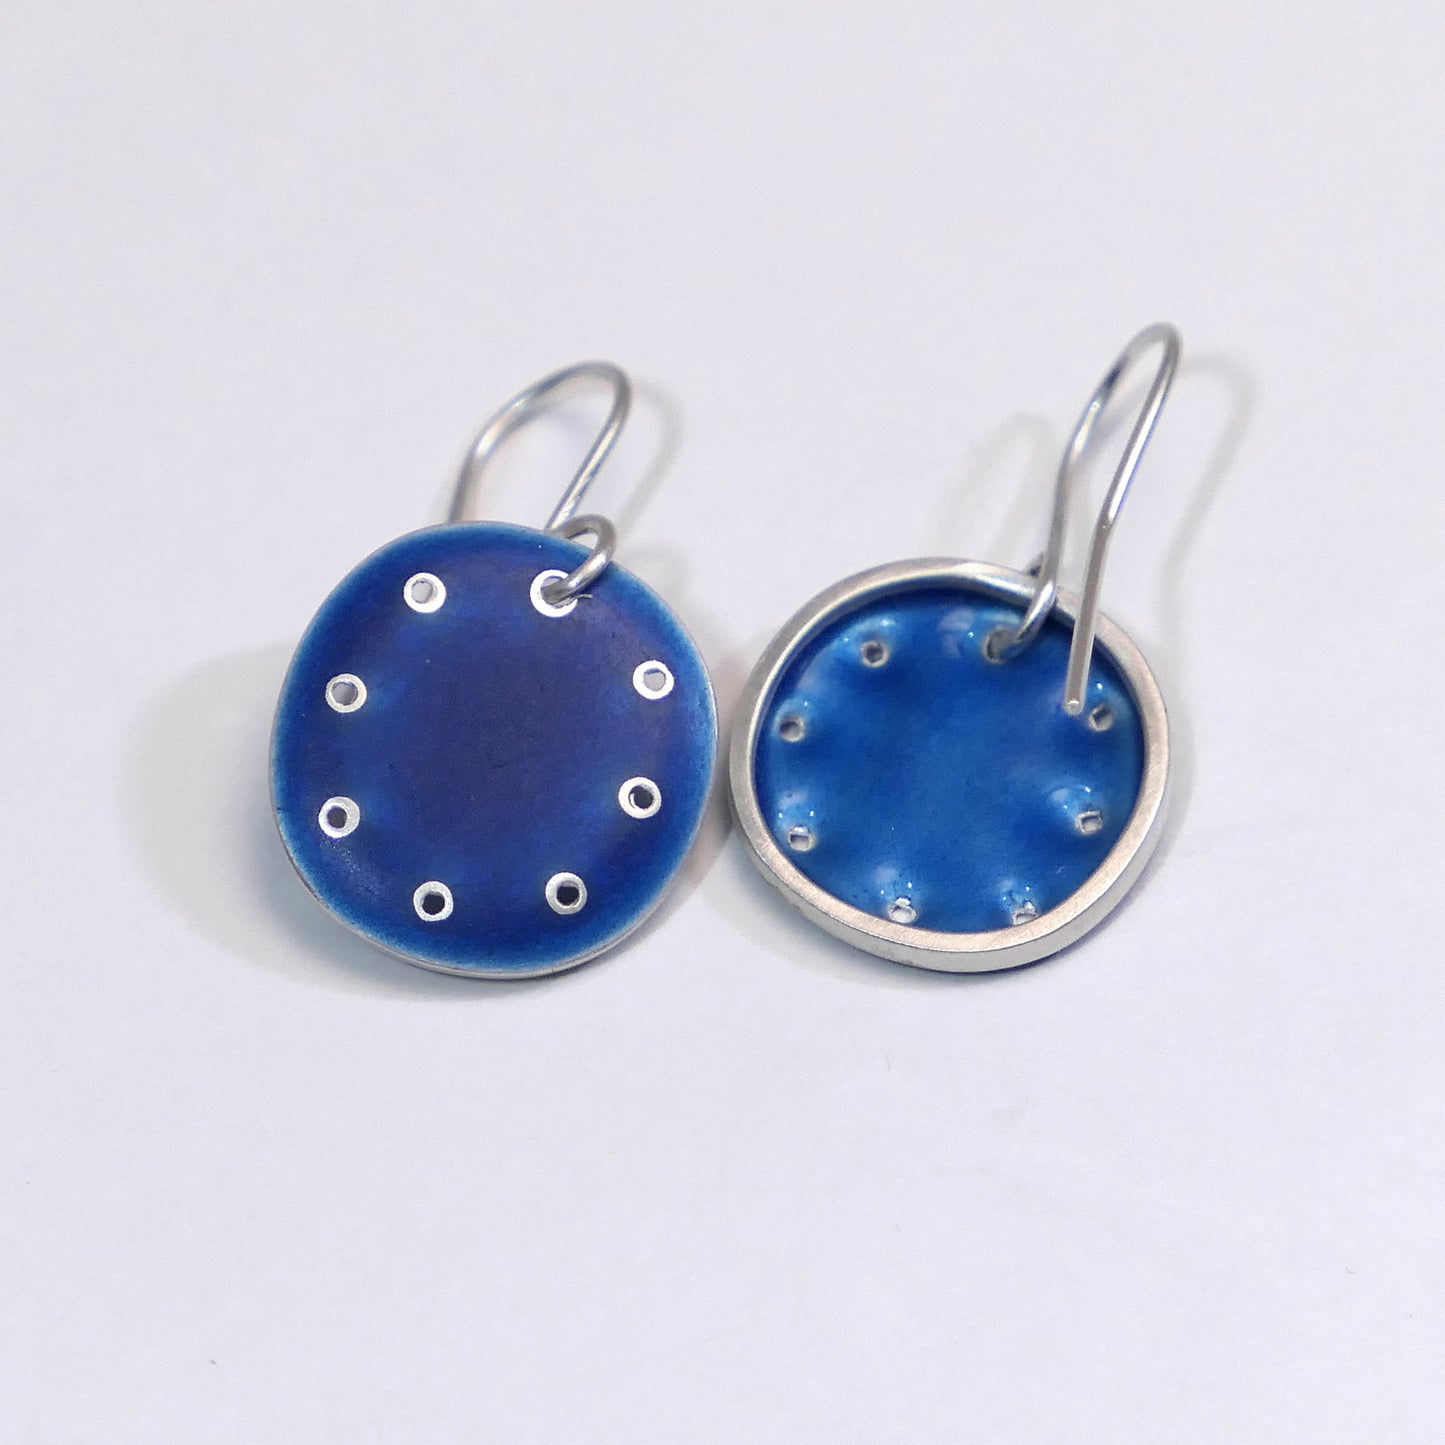 Mid-grey blue enamel 'Honesty' earrings, small